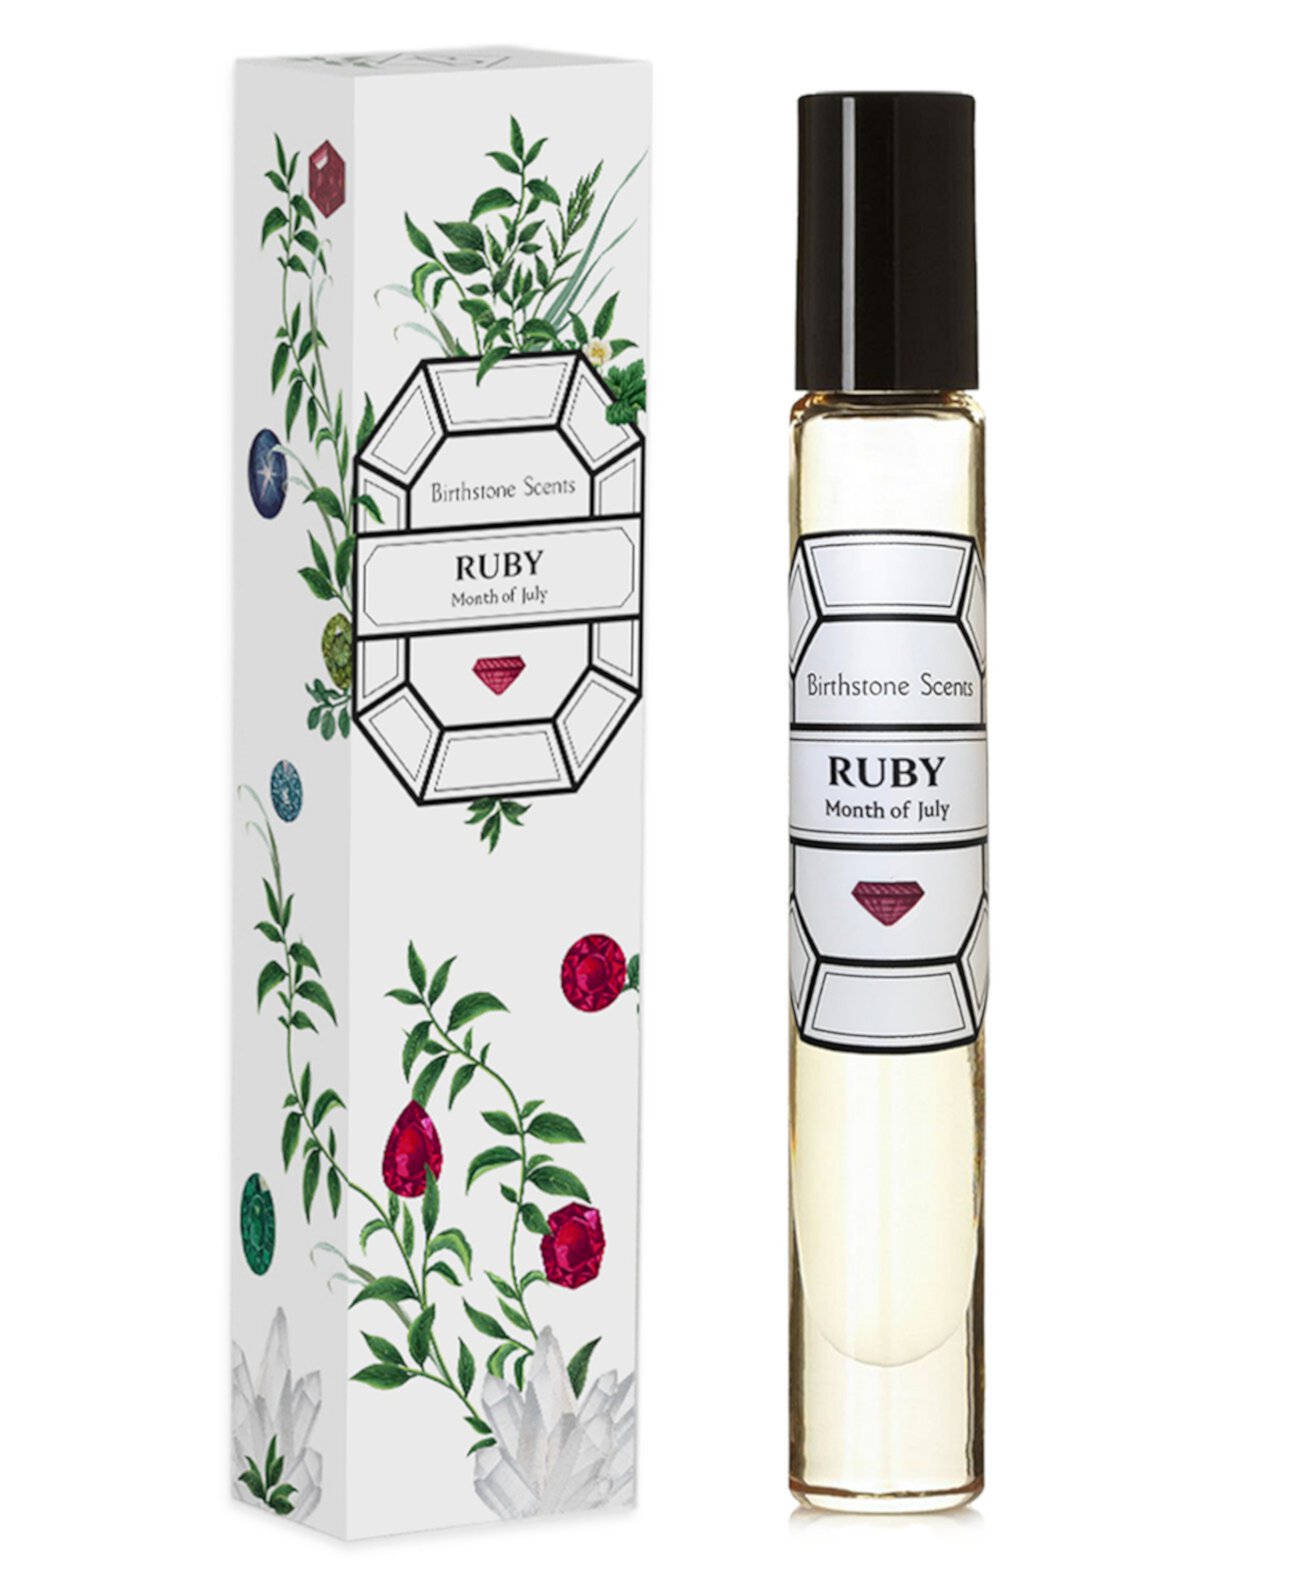 Ruby Perfume Oil Rollerball, 0,27 унции. Birthstone Scents